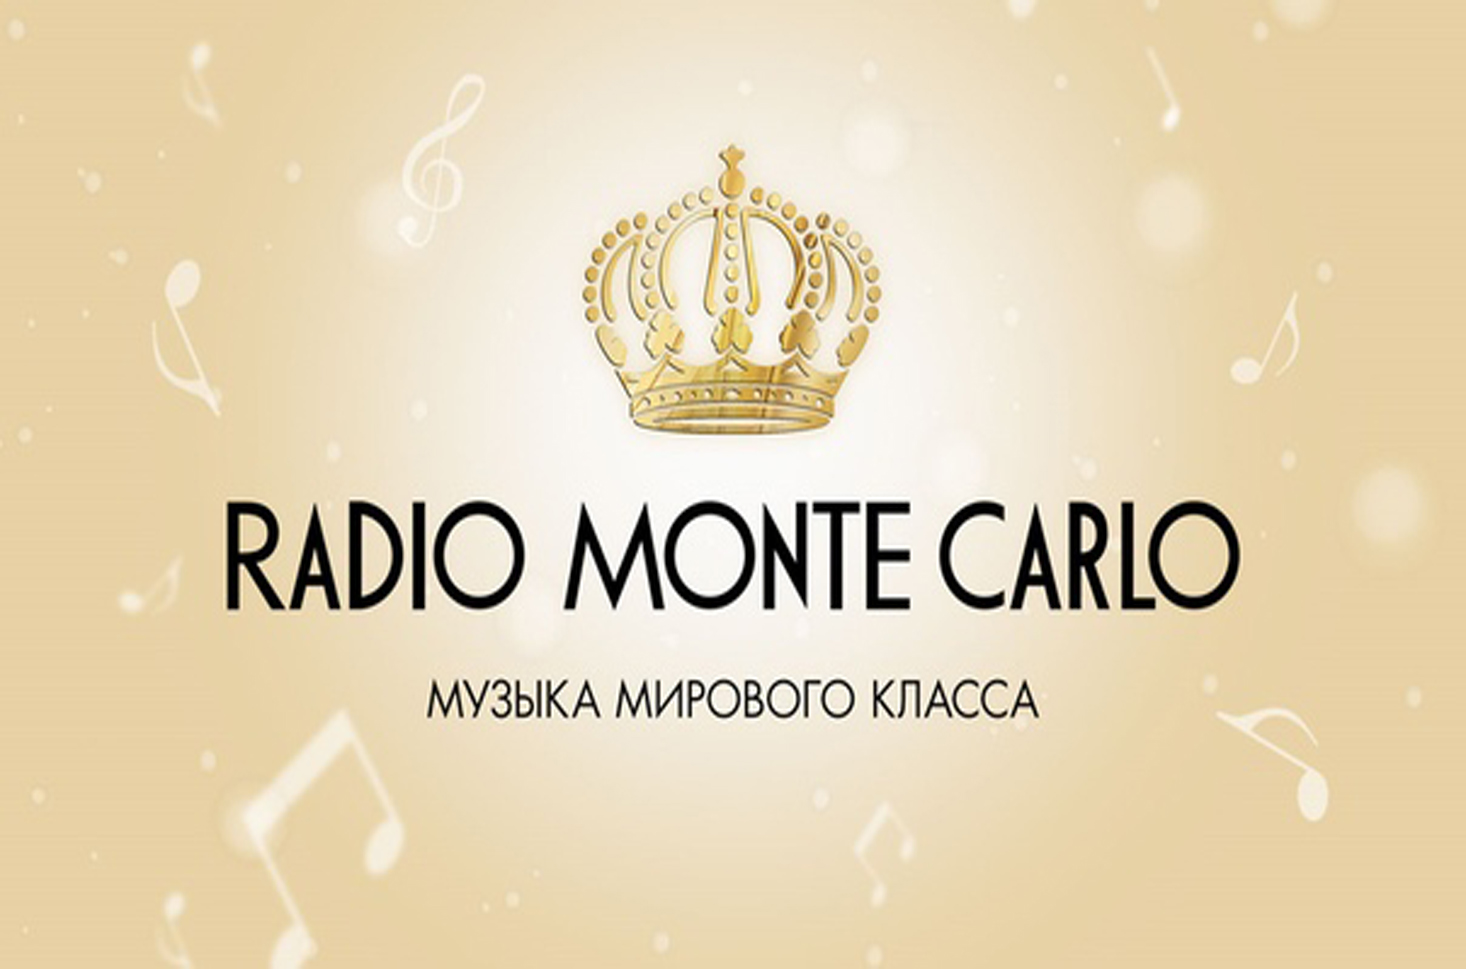 Monte Carlo 105.9. Радио Монте Карло. Монте Карло логотип.